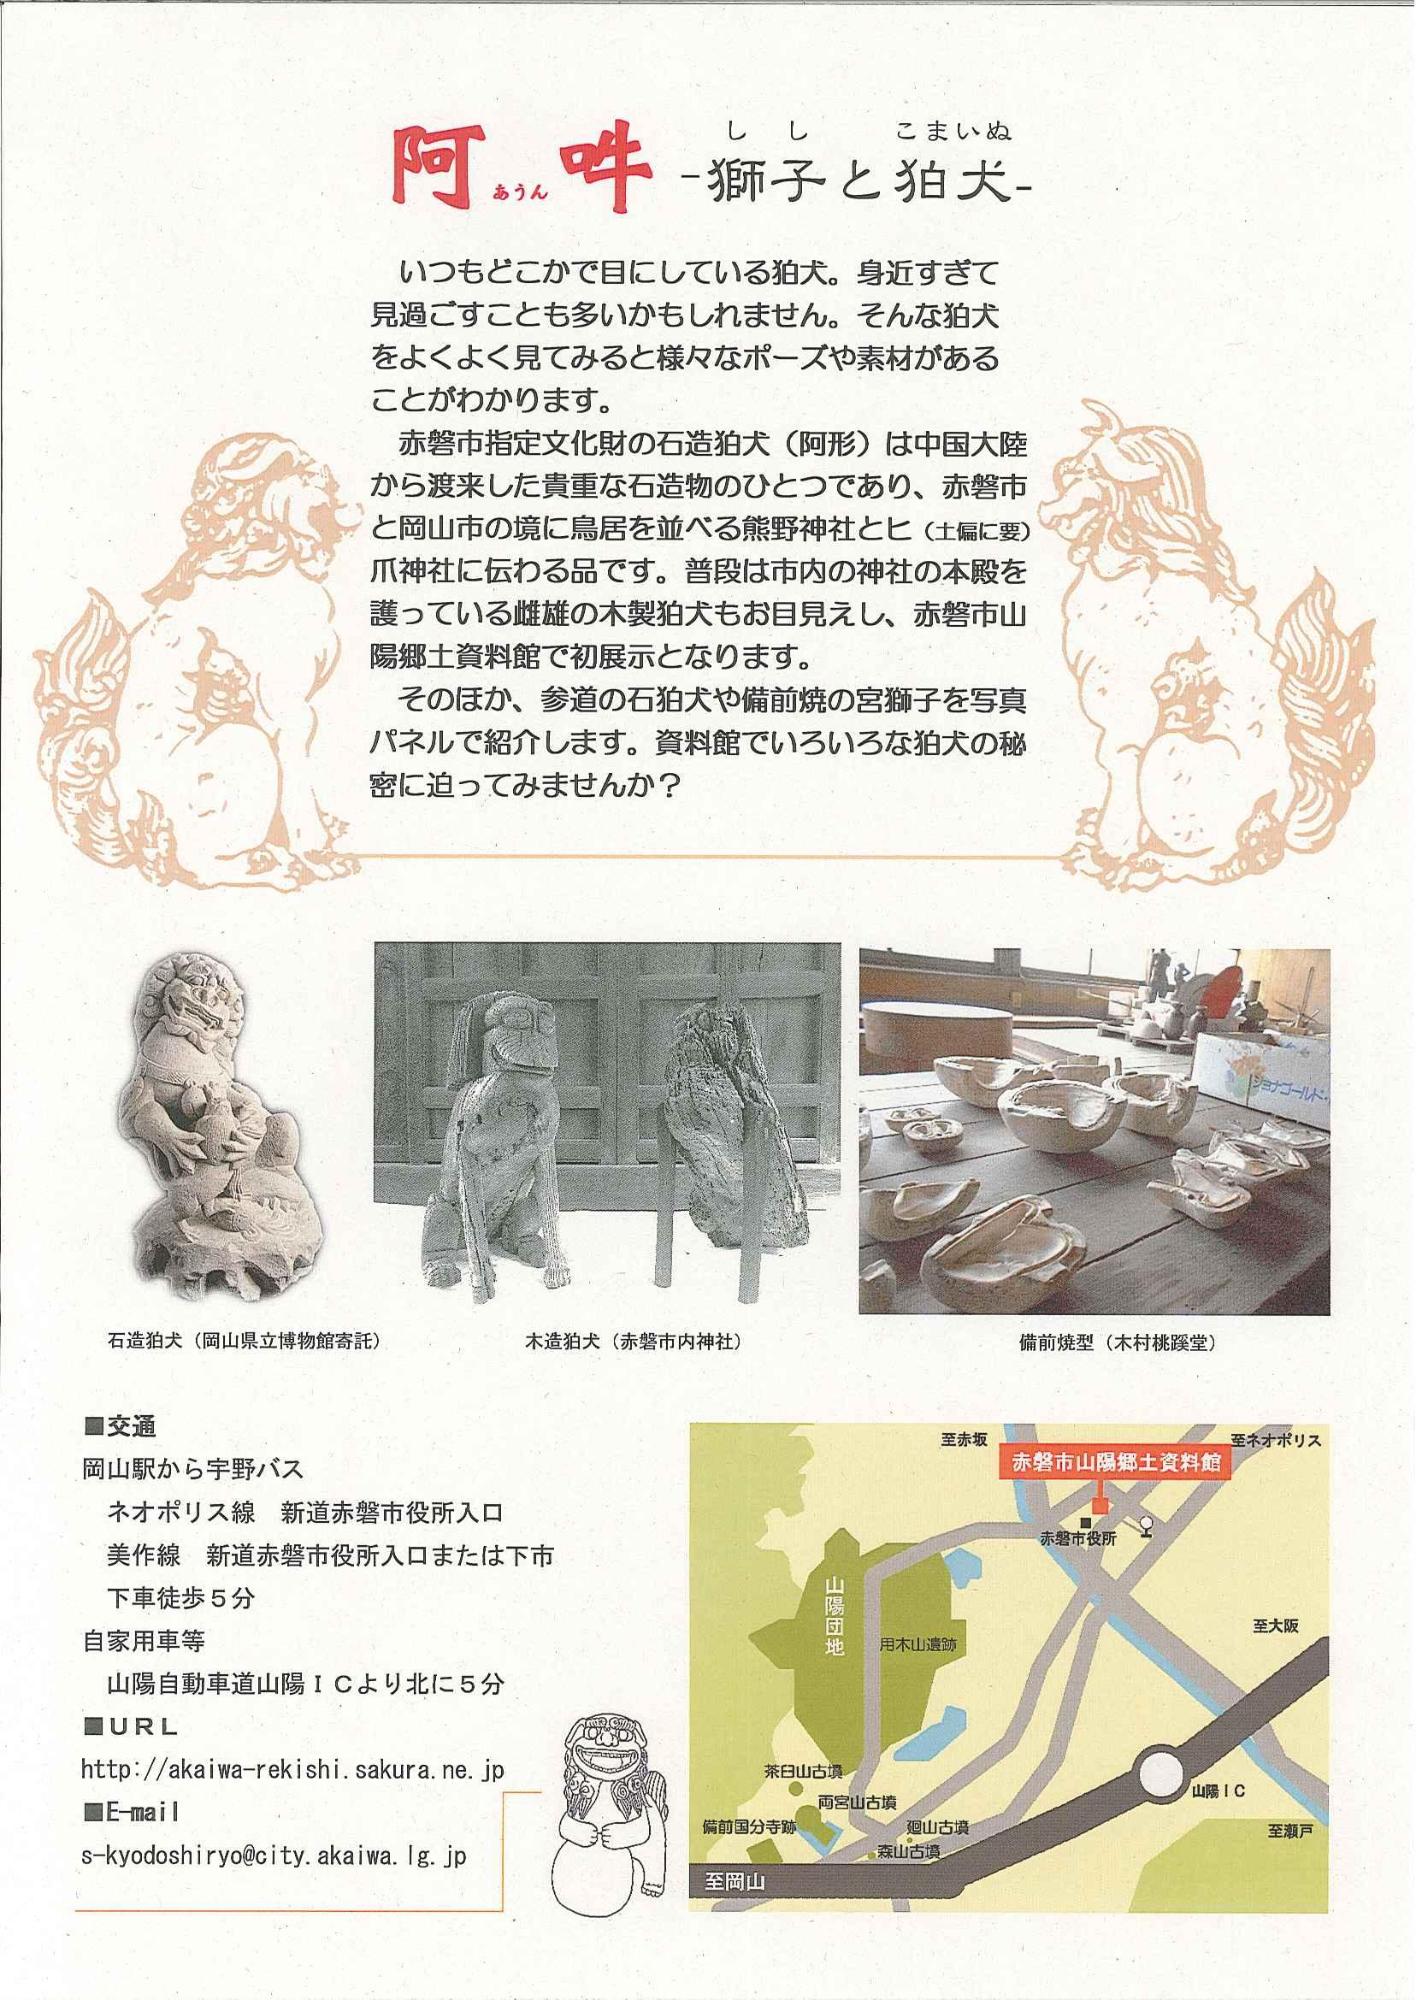 企画展「阿吽 ー獅子と狛犬ー」のチラシ裏面の写真